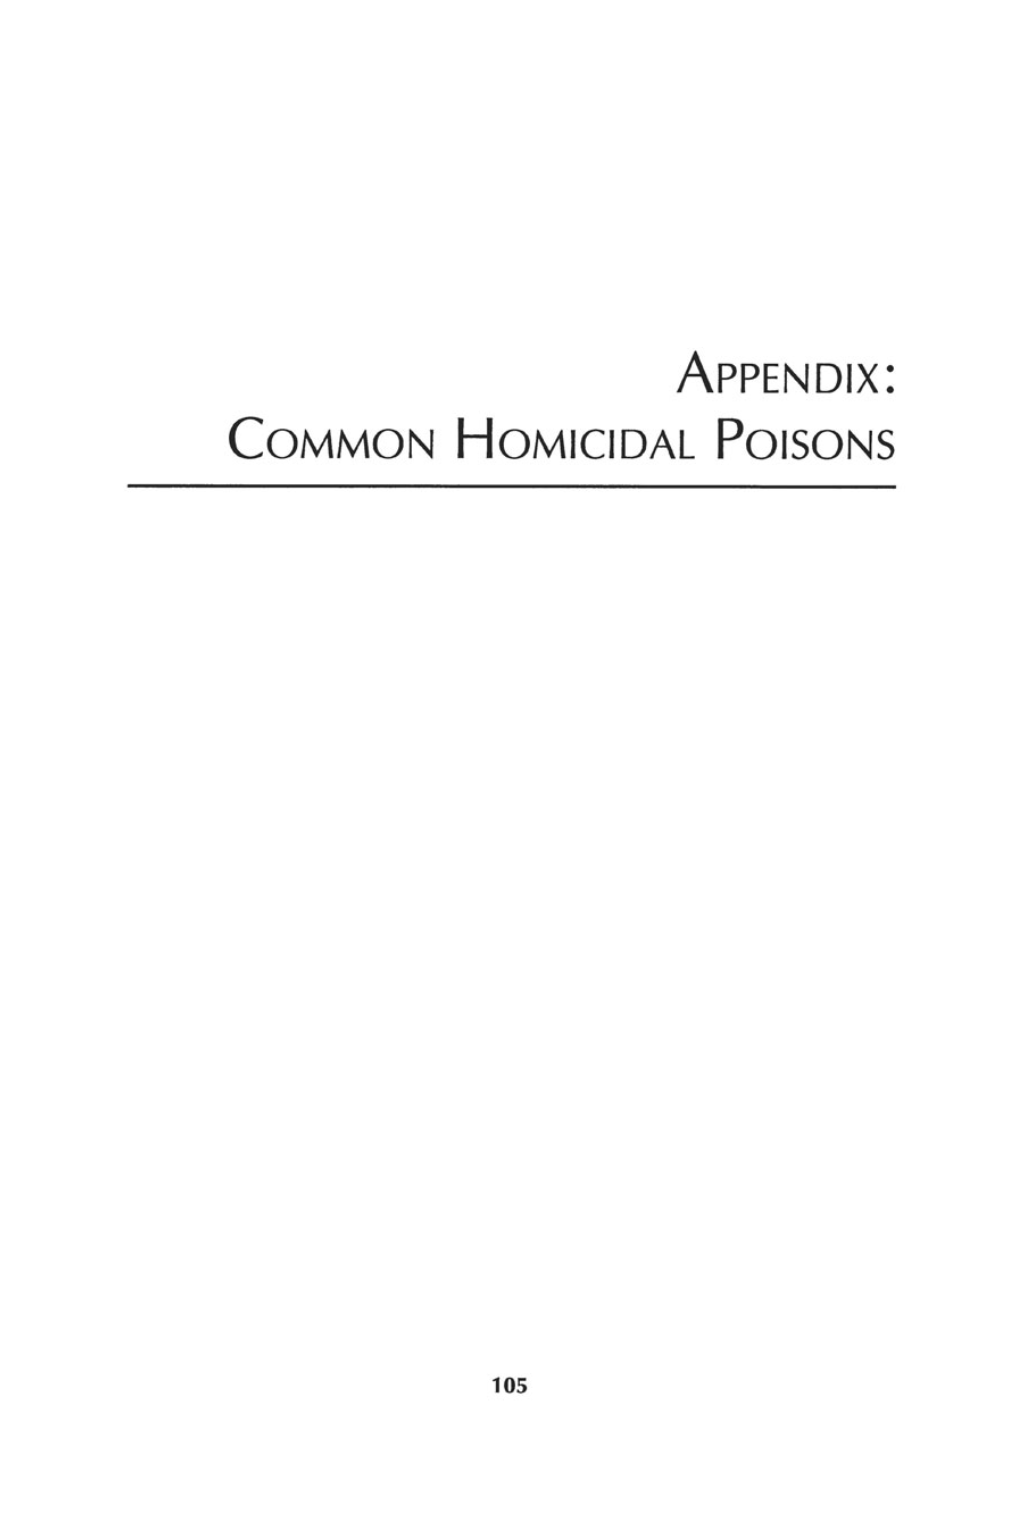 Appendix: COMMON HOMICIDAL POISONS